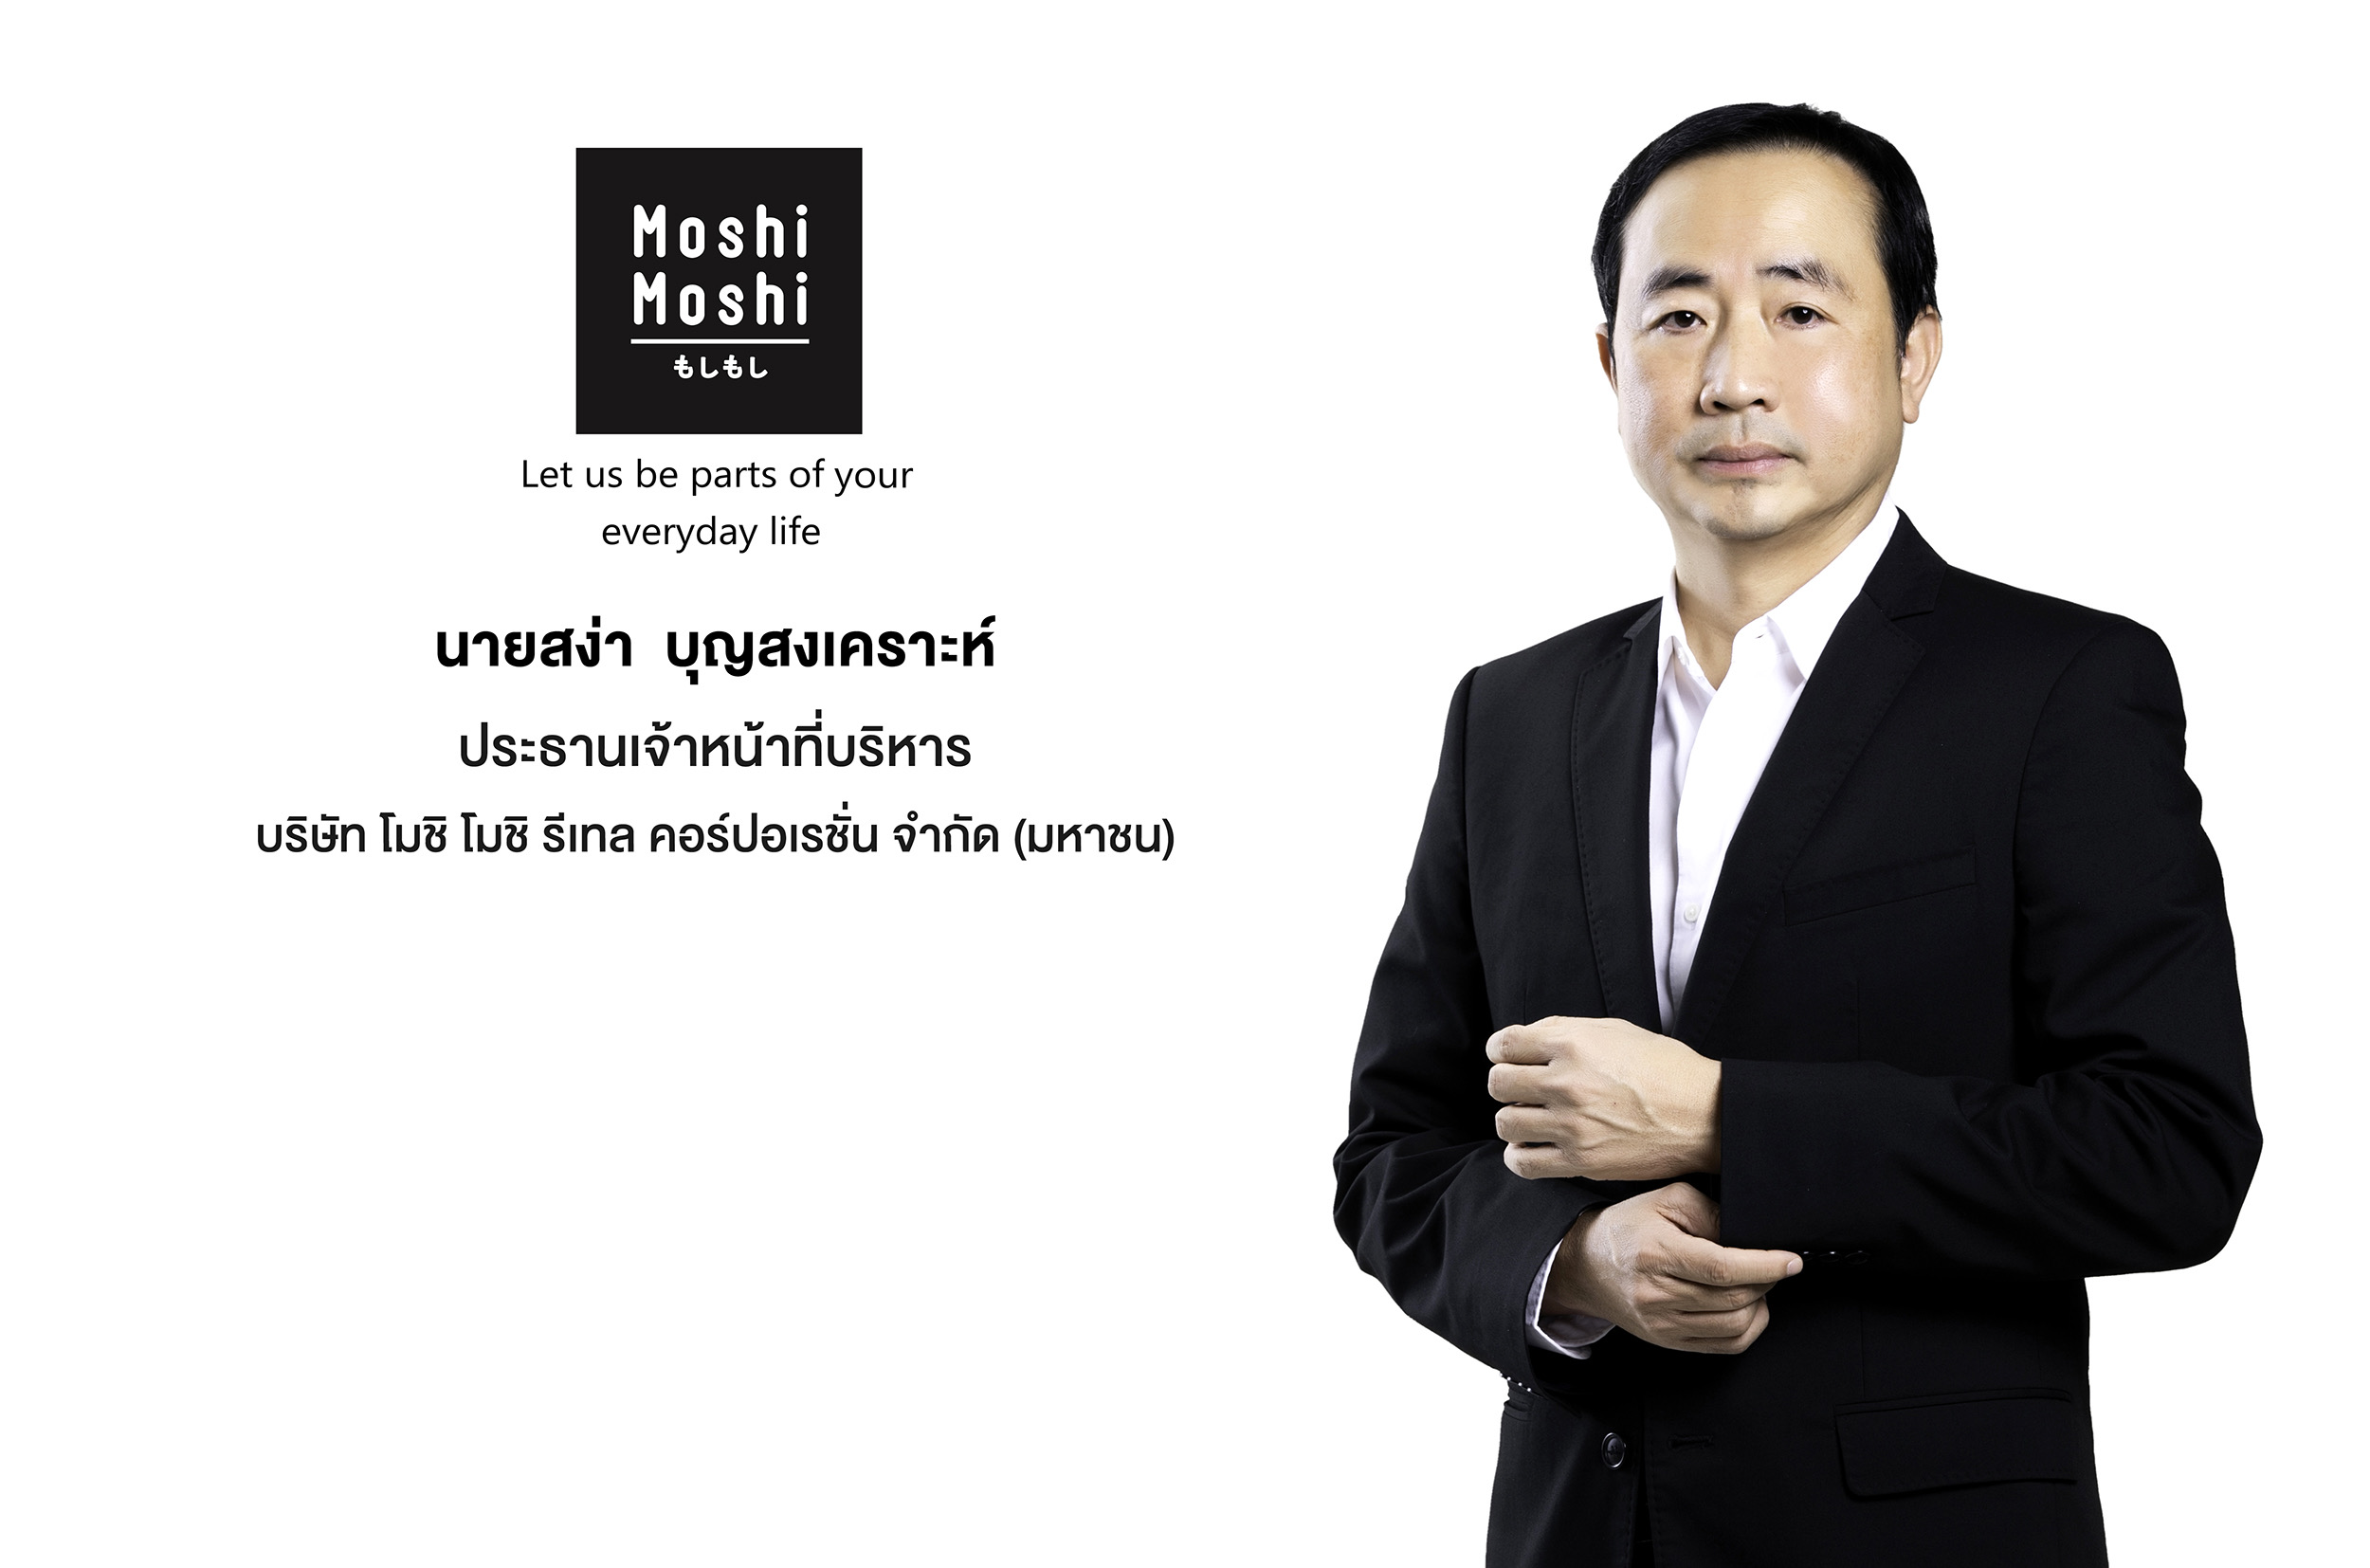 บมจ. โมชิ โมชิ รีเทล คอร์ปอเรชั่น ผู้นําธุรกิจร้านค้าปลีกและค้าส่งสินค้าไลฟ์สไตล์รายใหญ่ของไทยภายใต้แบรนด์ Moshi Moshi ยื่นไฟลิ่งระดมทุนเข้าจดทะเบียนใน SET คาดเสนอขาย IPO ไม่เกิน 75 ล้านหุ้น